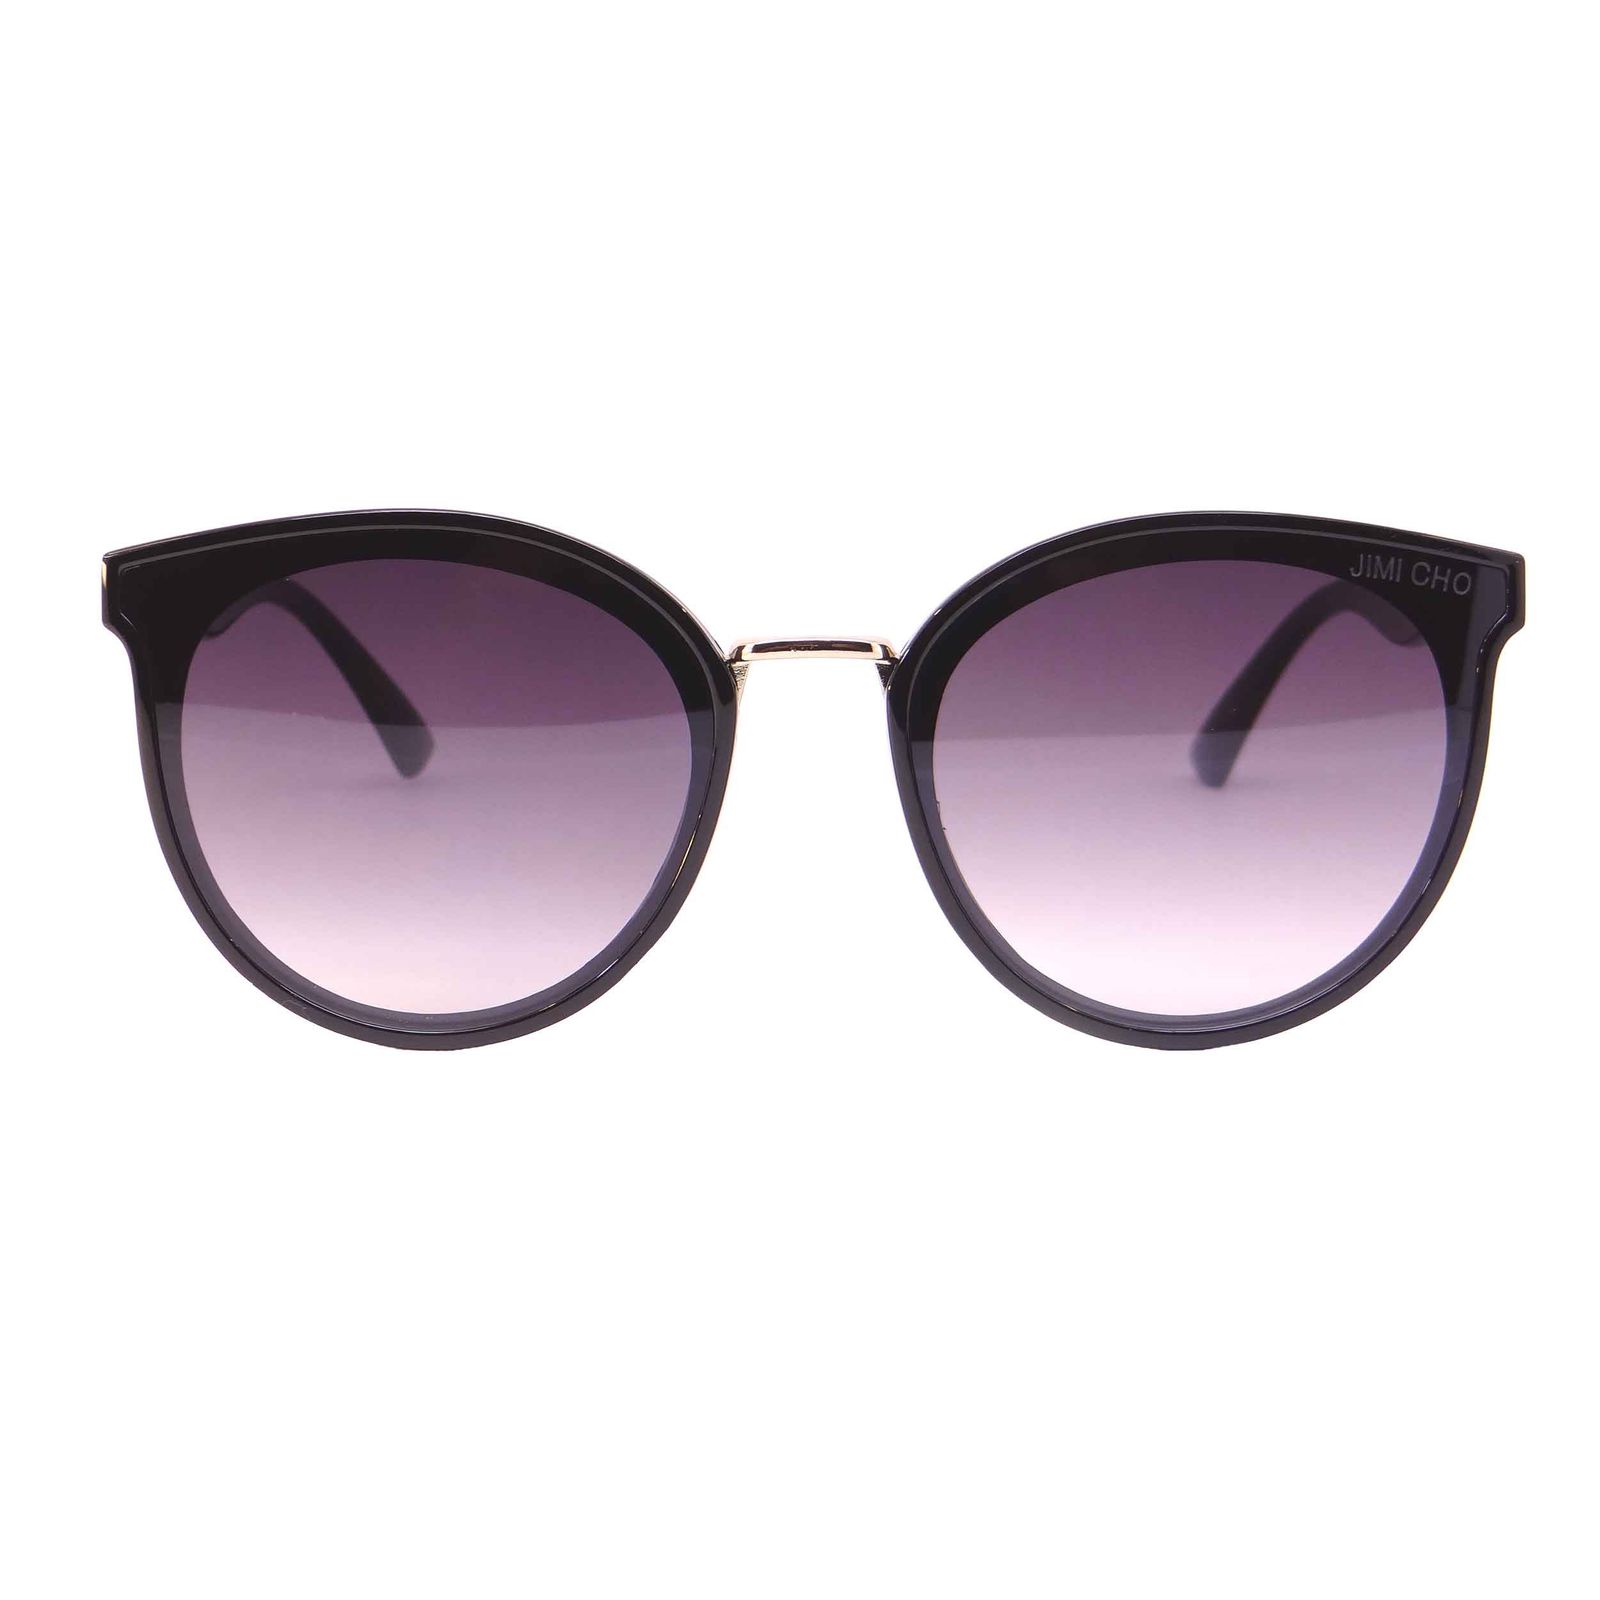 عینک آفتابی زنانه جیمی چو مدل 9929  -  - 1